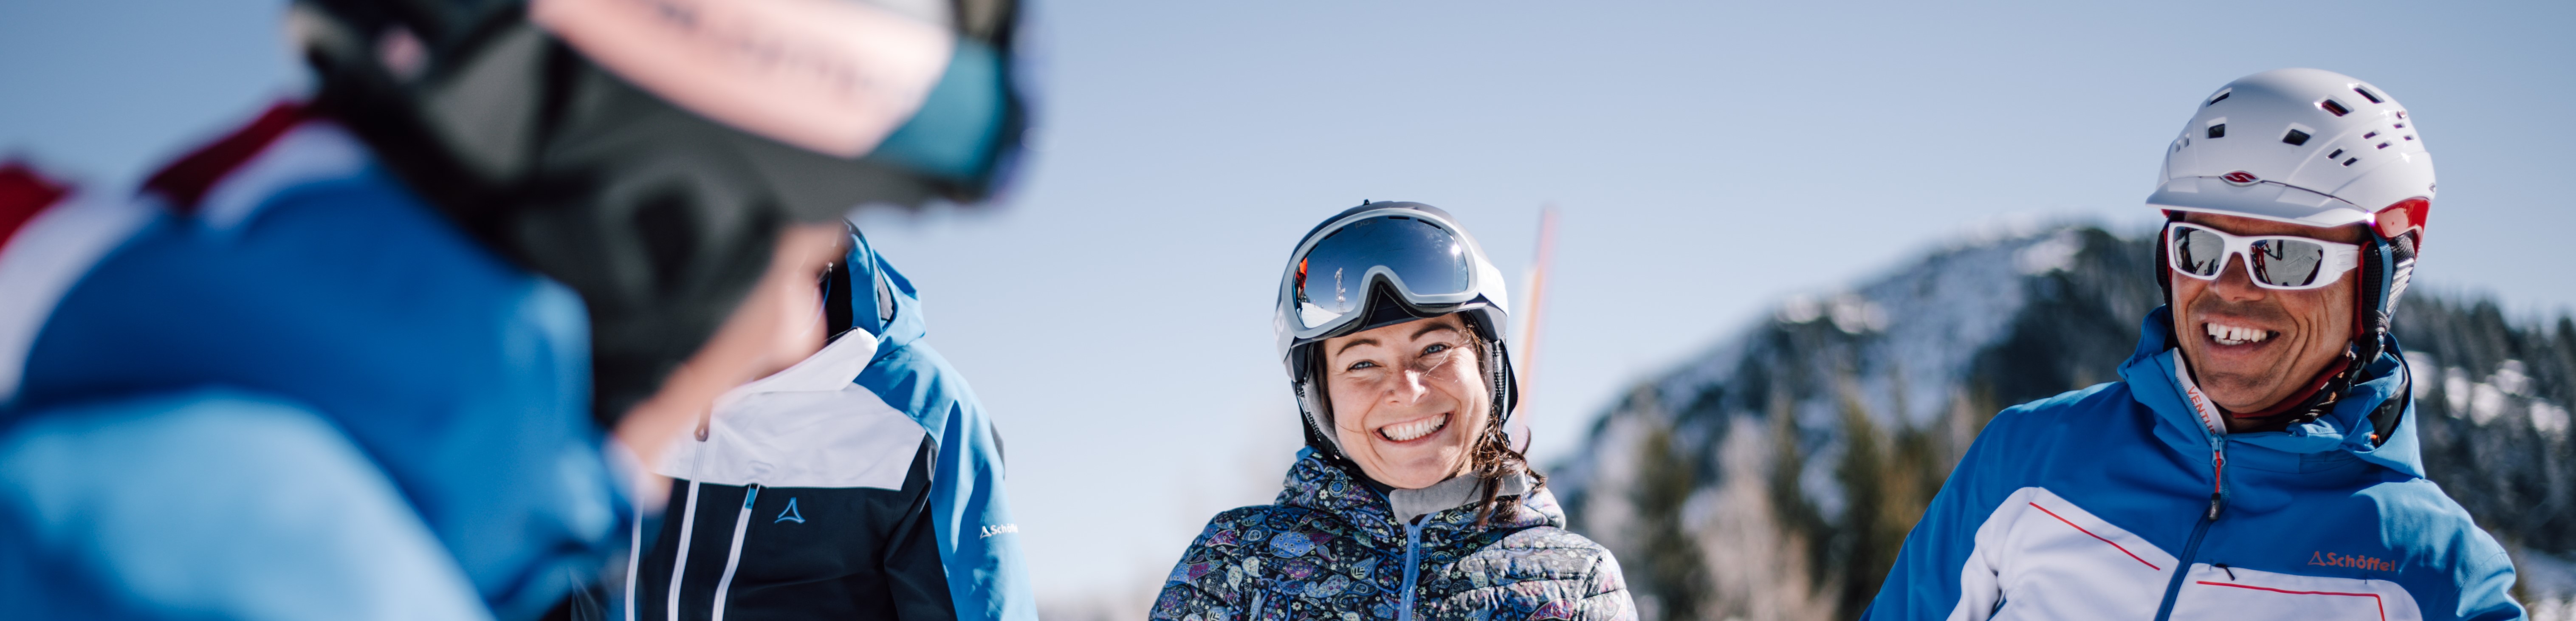 Skischule Lofer Salzburg Jugendlichen Skikurs Skiverleih Winter